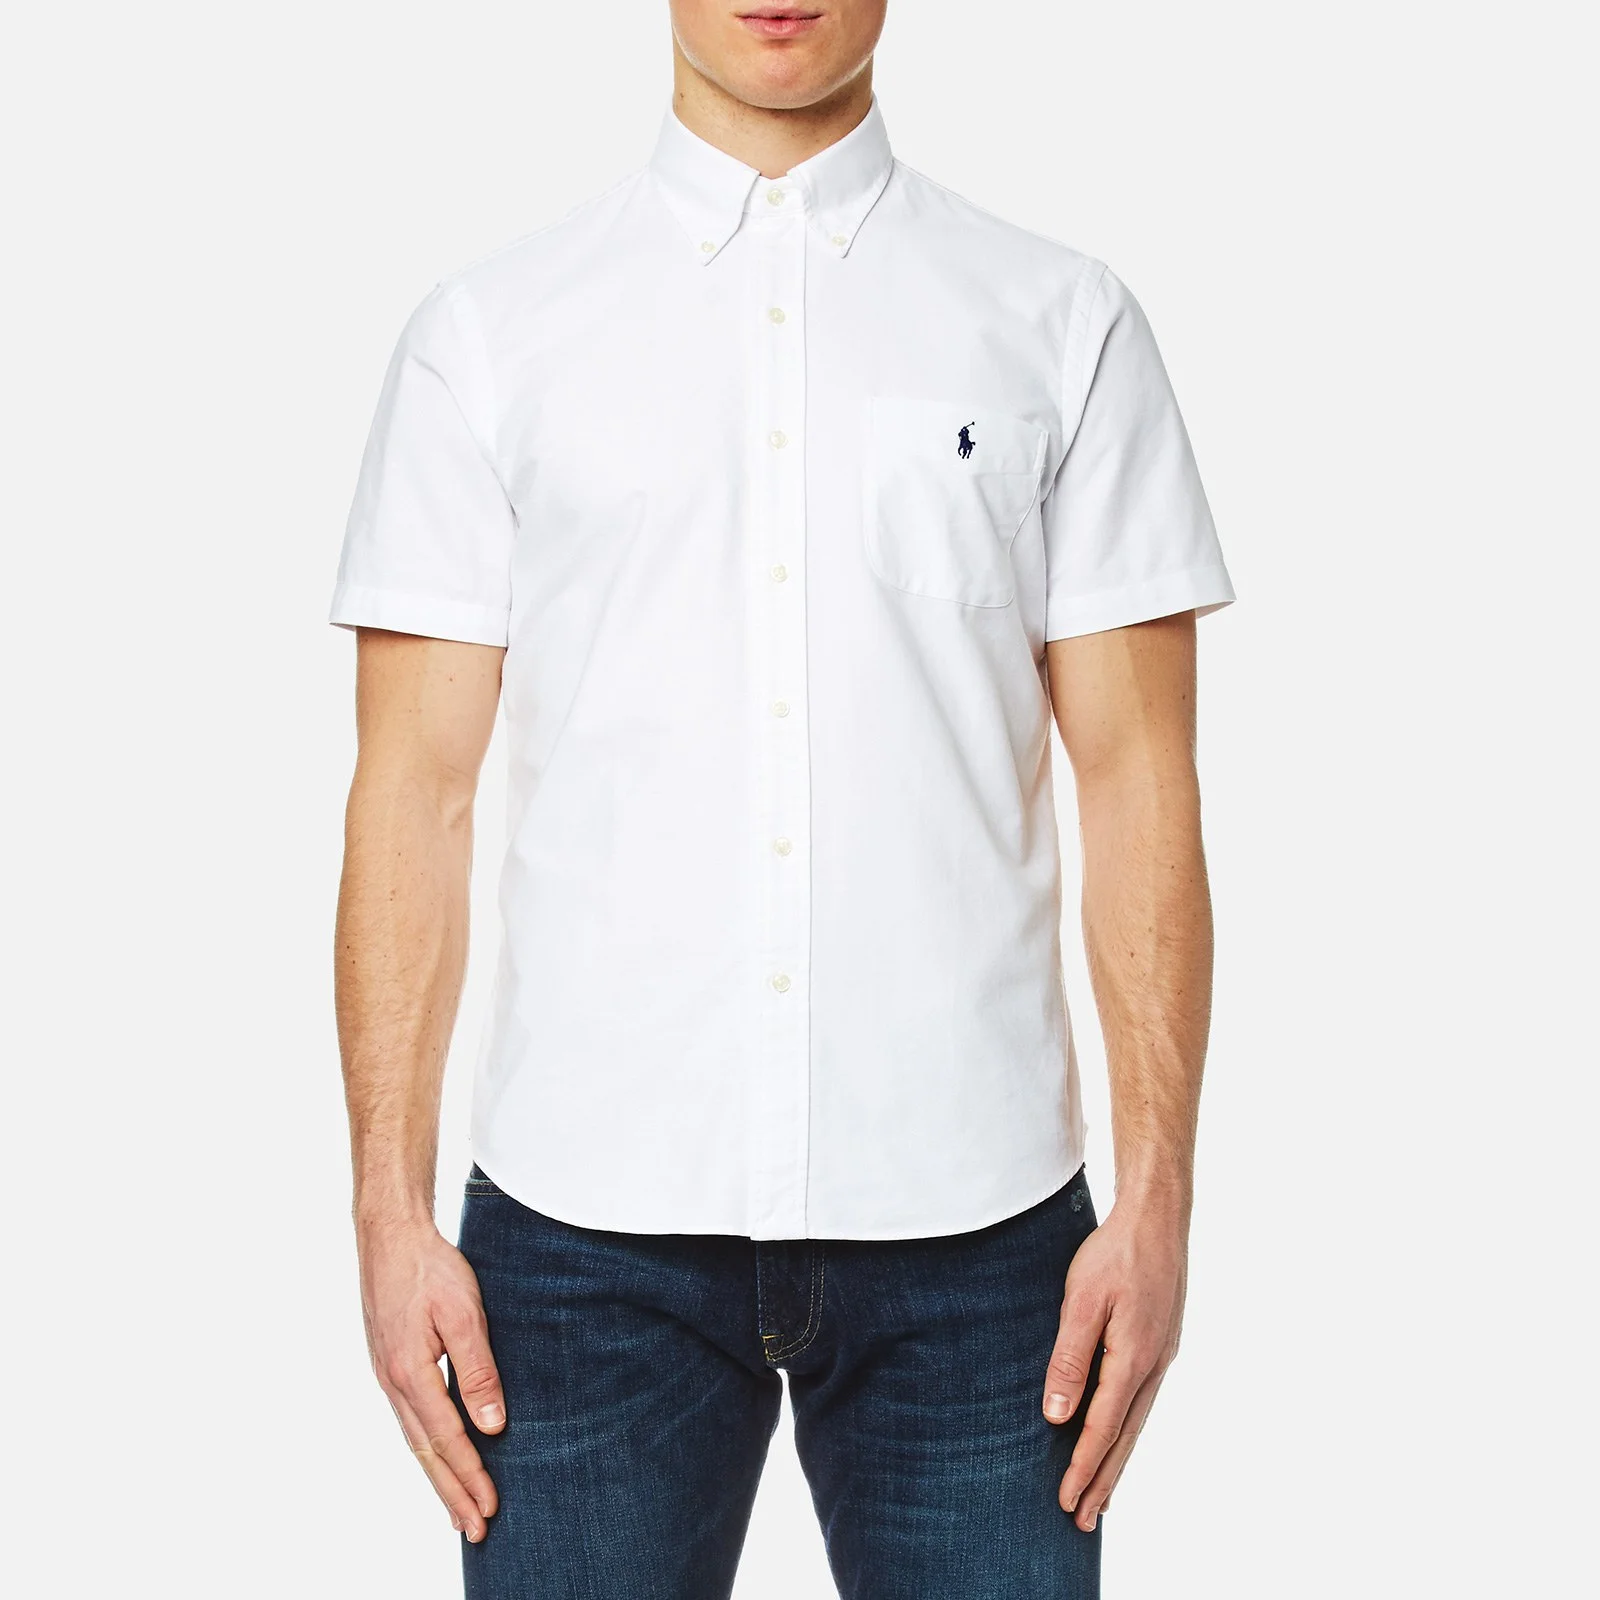 Polo Ralph Lauren Men's Short Sleeve Shirt - White Image 1